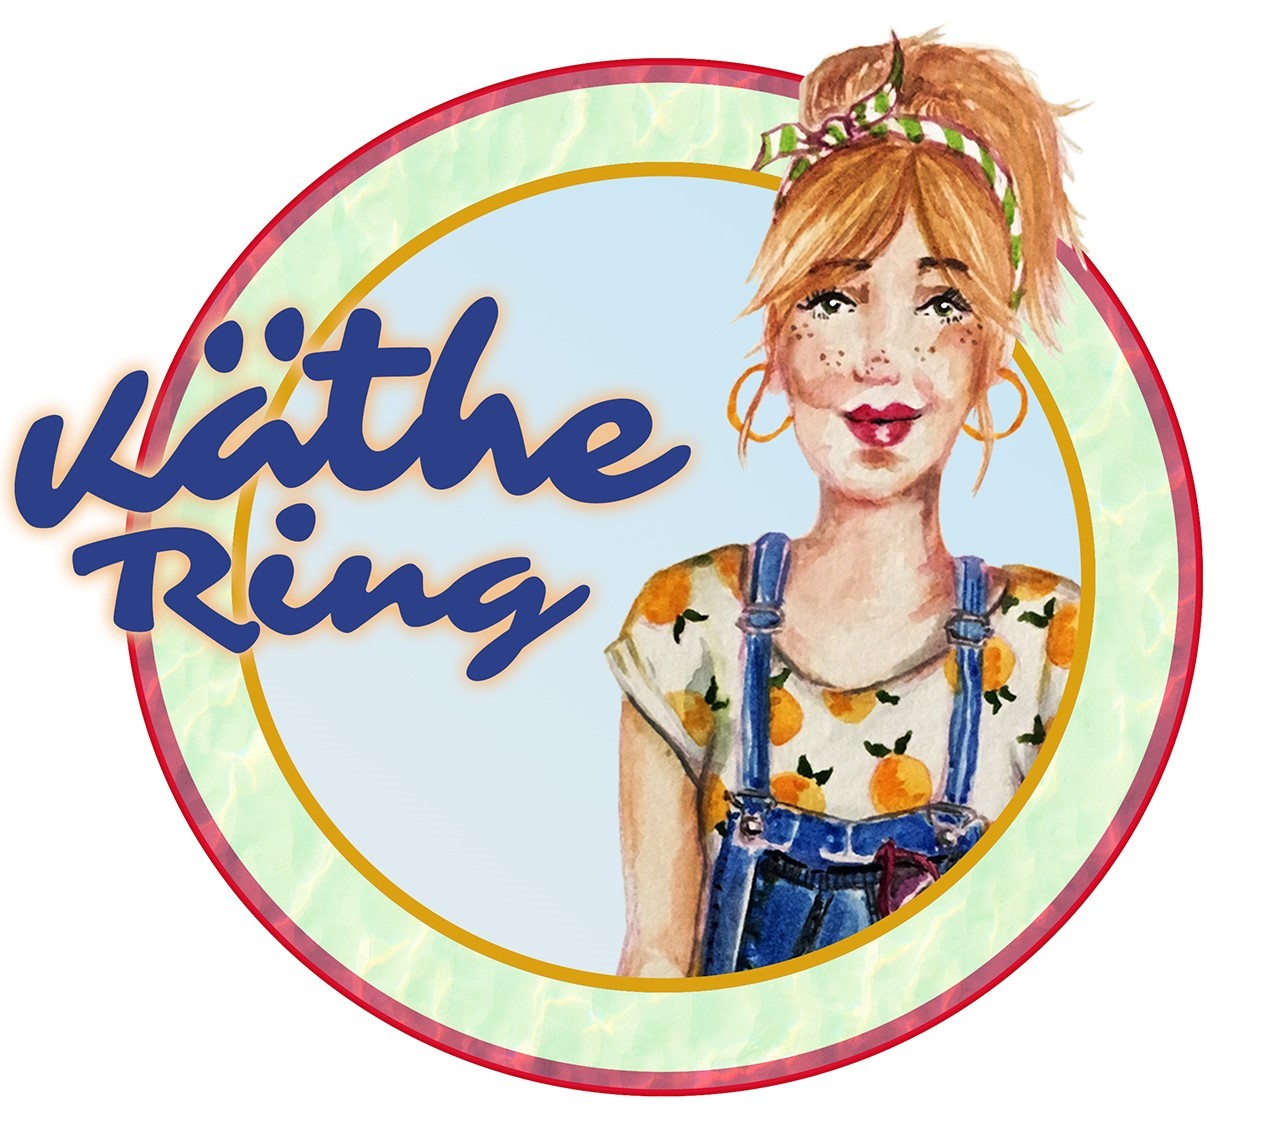 Logo Käthe Ring